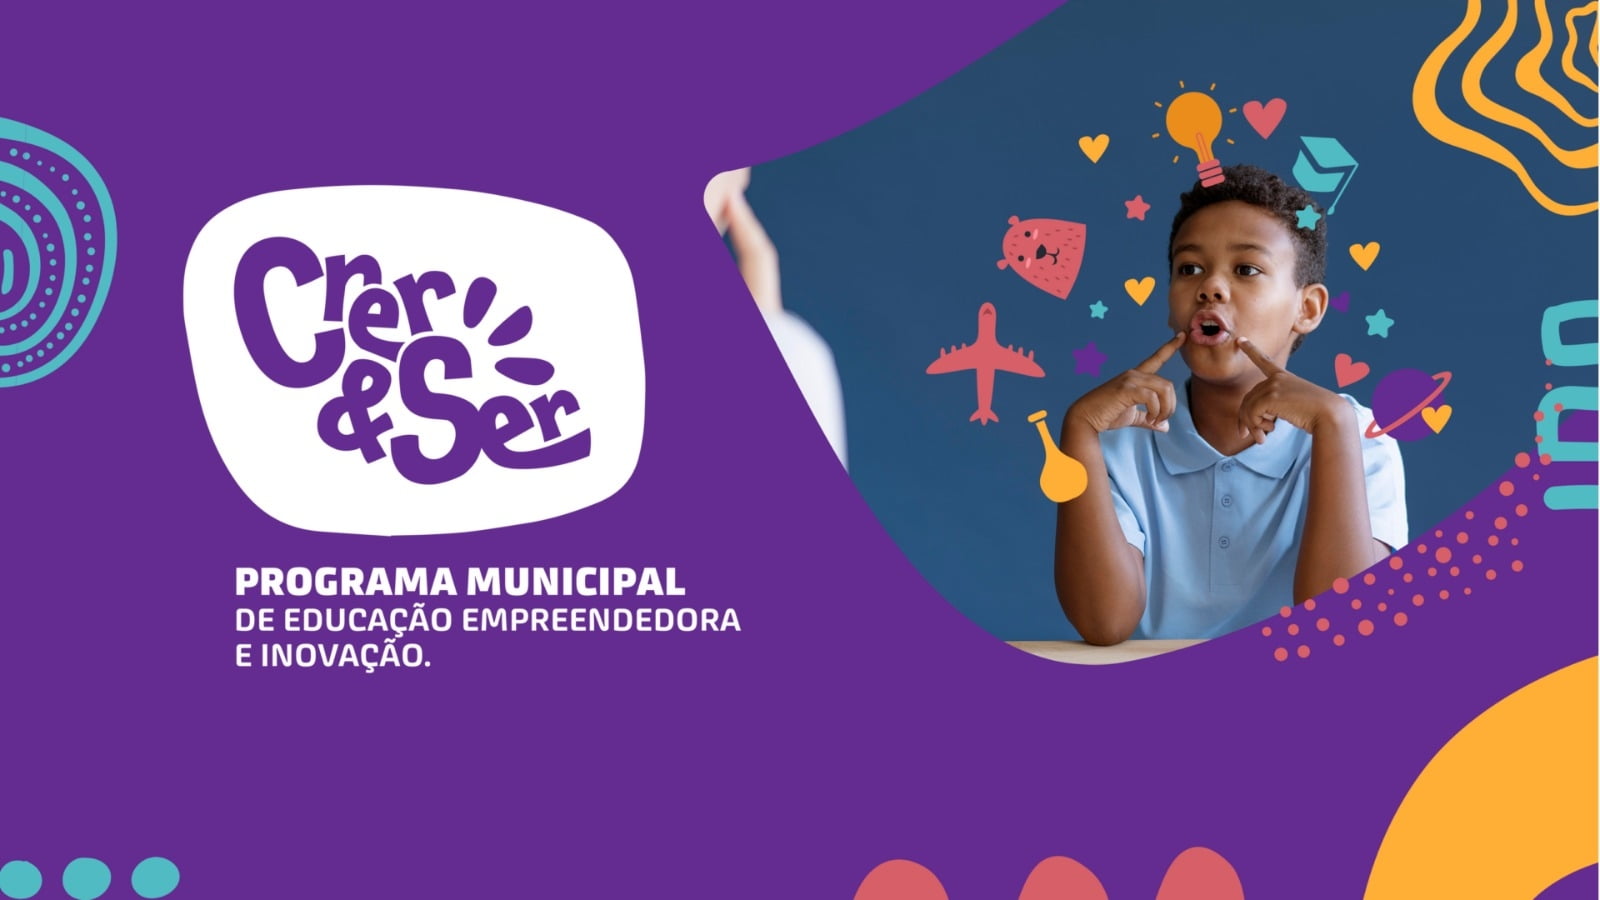 Programa Crer&Ser pretende educar para o empreendedorismo em Guarapuava